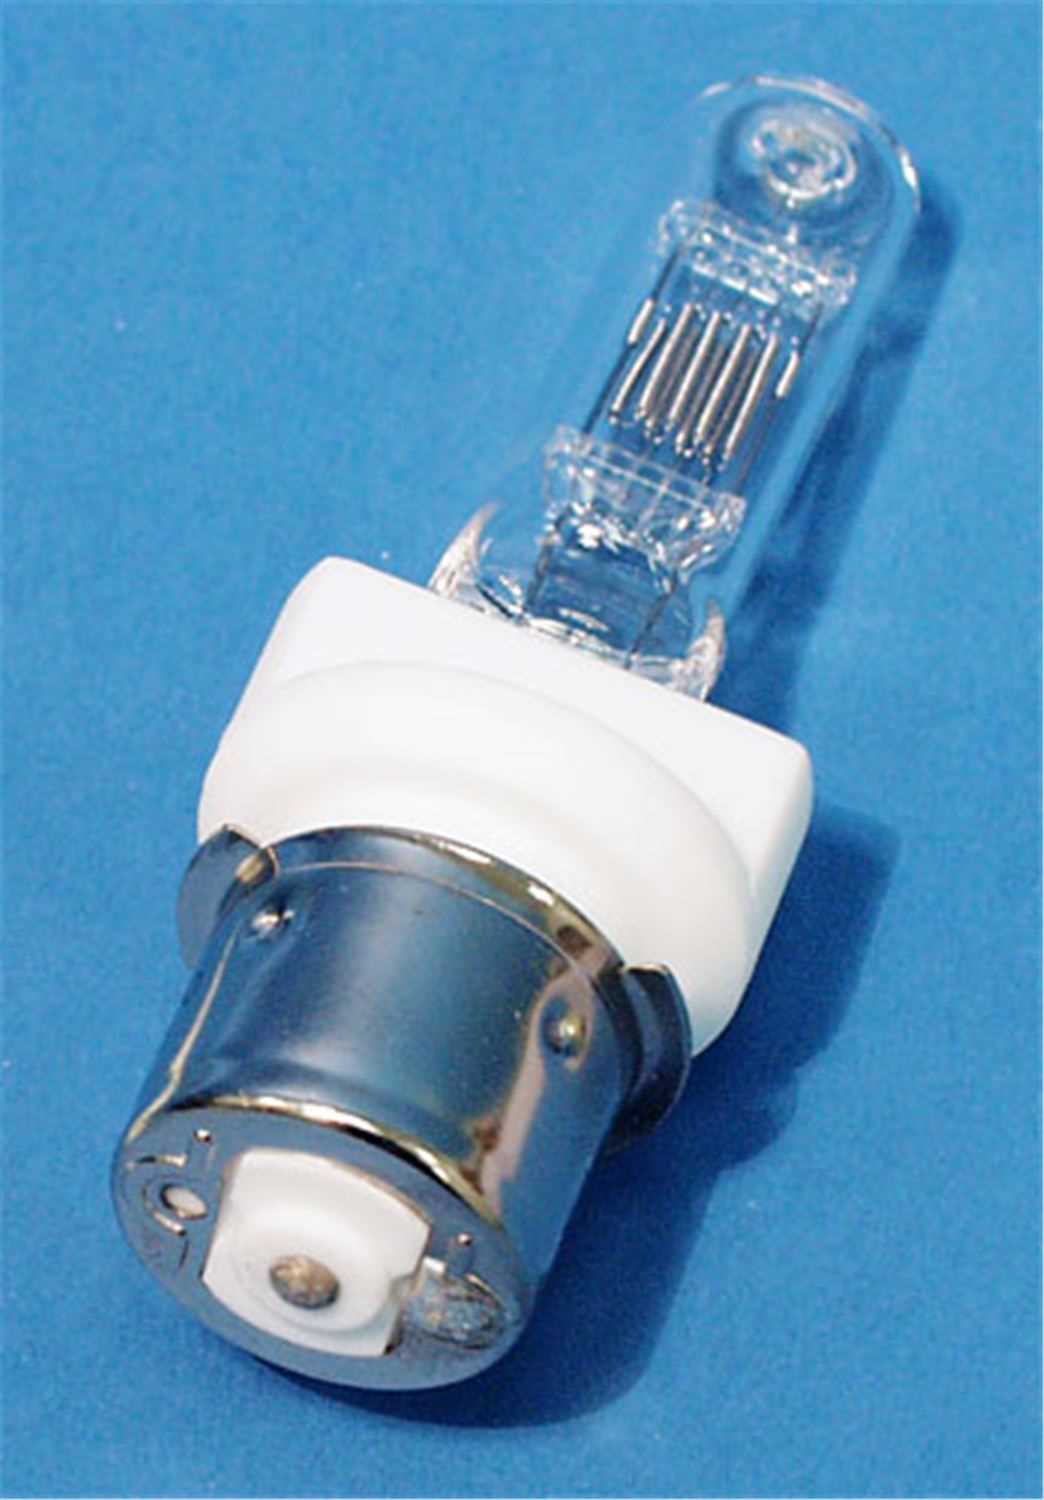 BTL 120V 500W Halogen Lamp - 500 Hour - ProSound and Stage Lighting